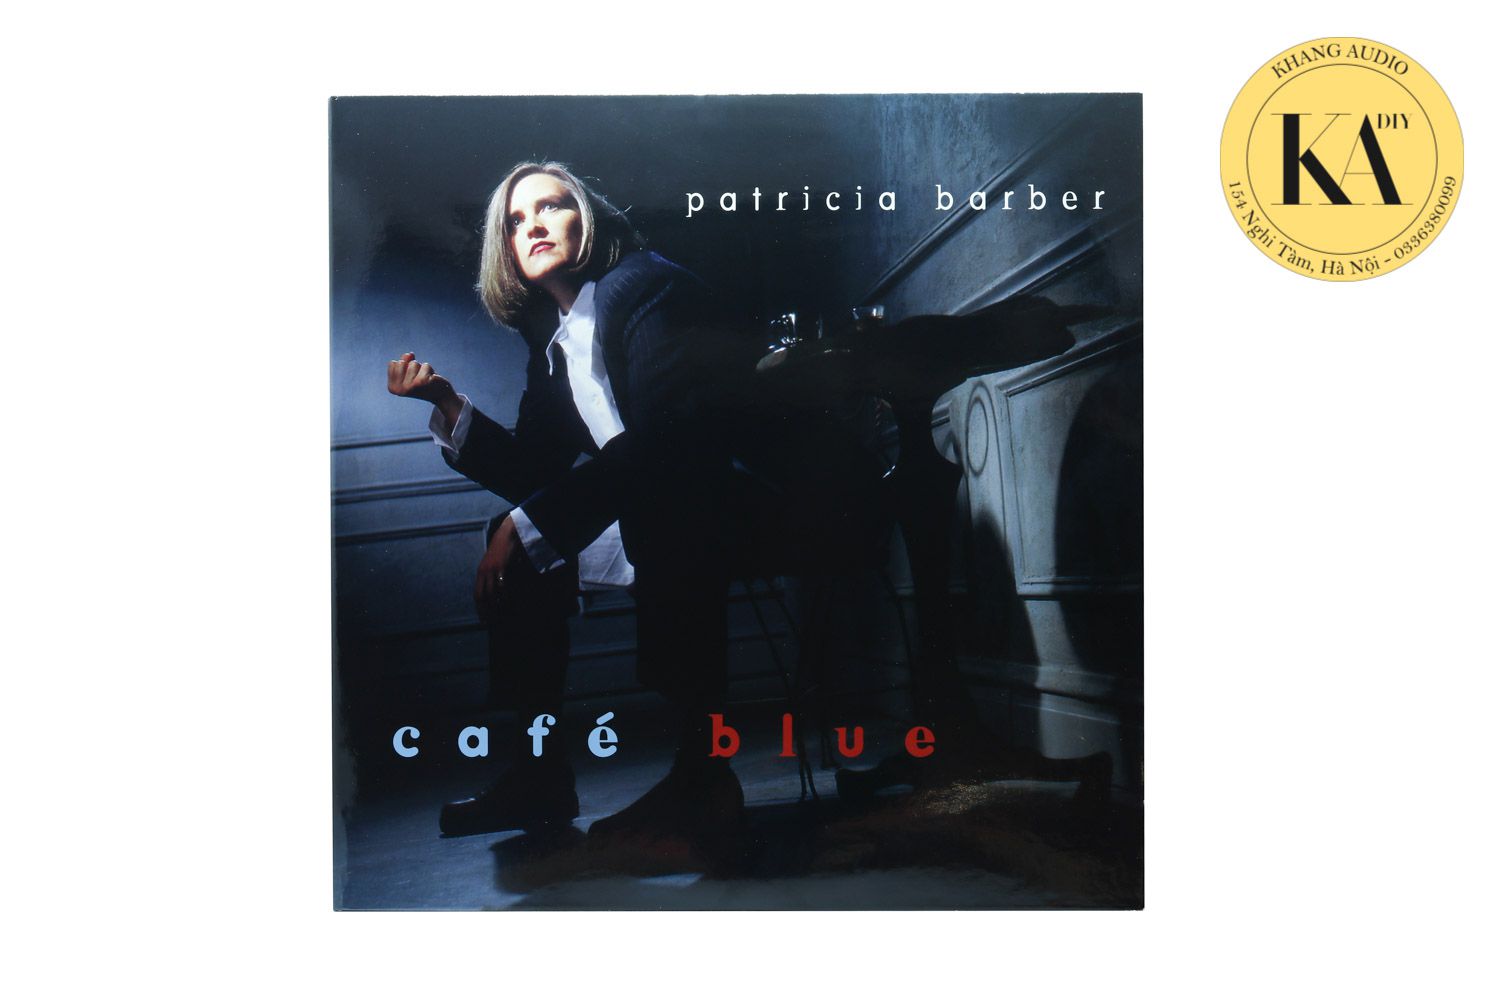 Đĩa than LP nhạc quốc tế Patricia Barber - Café Blue Khang Audio 0336380099